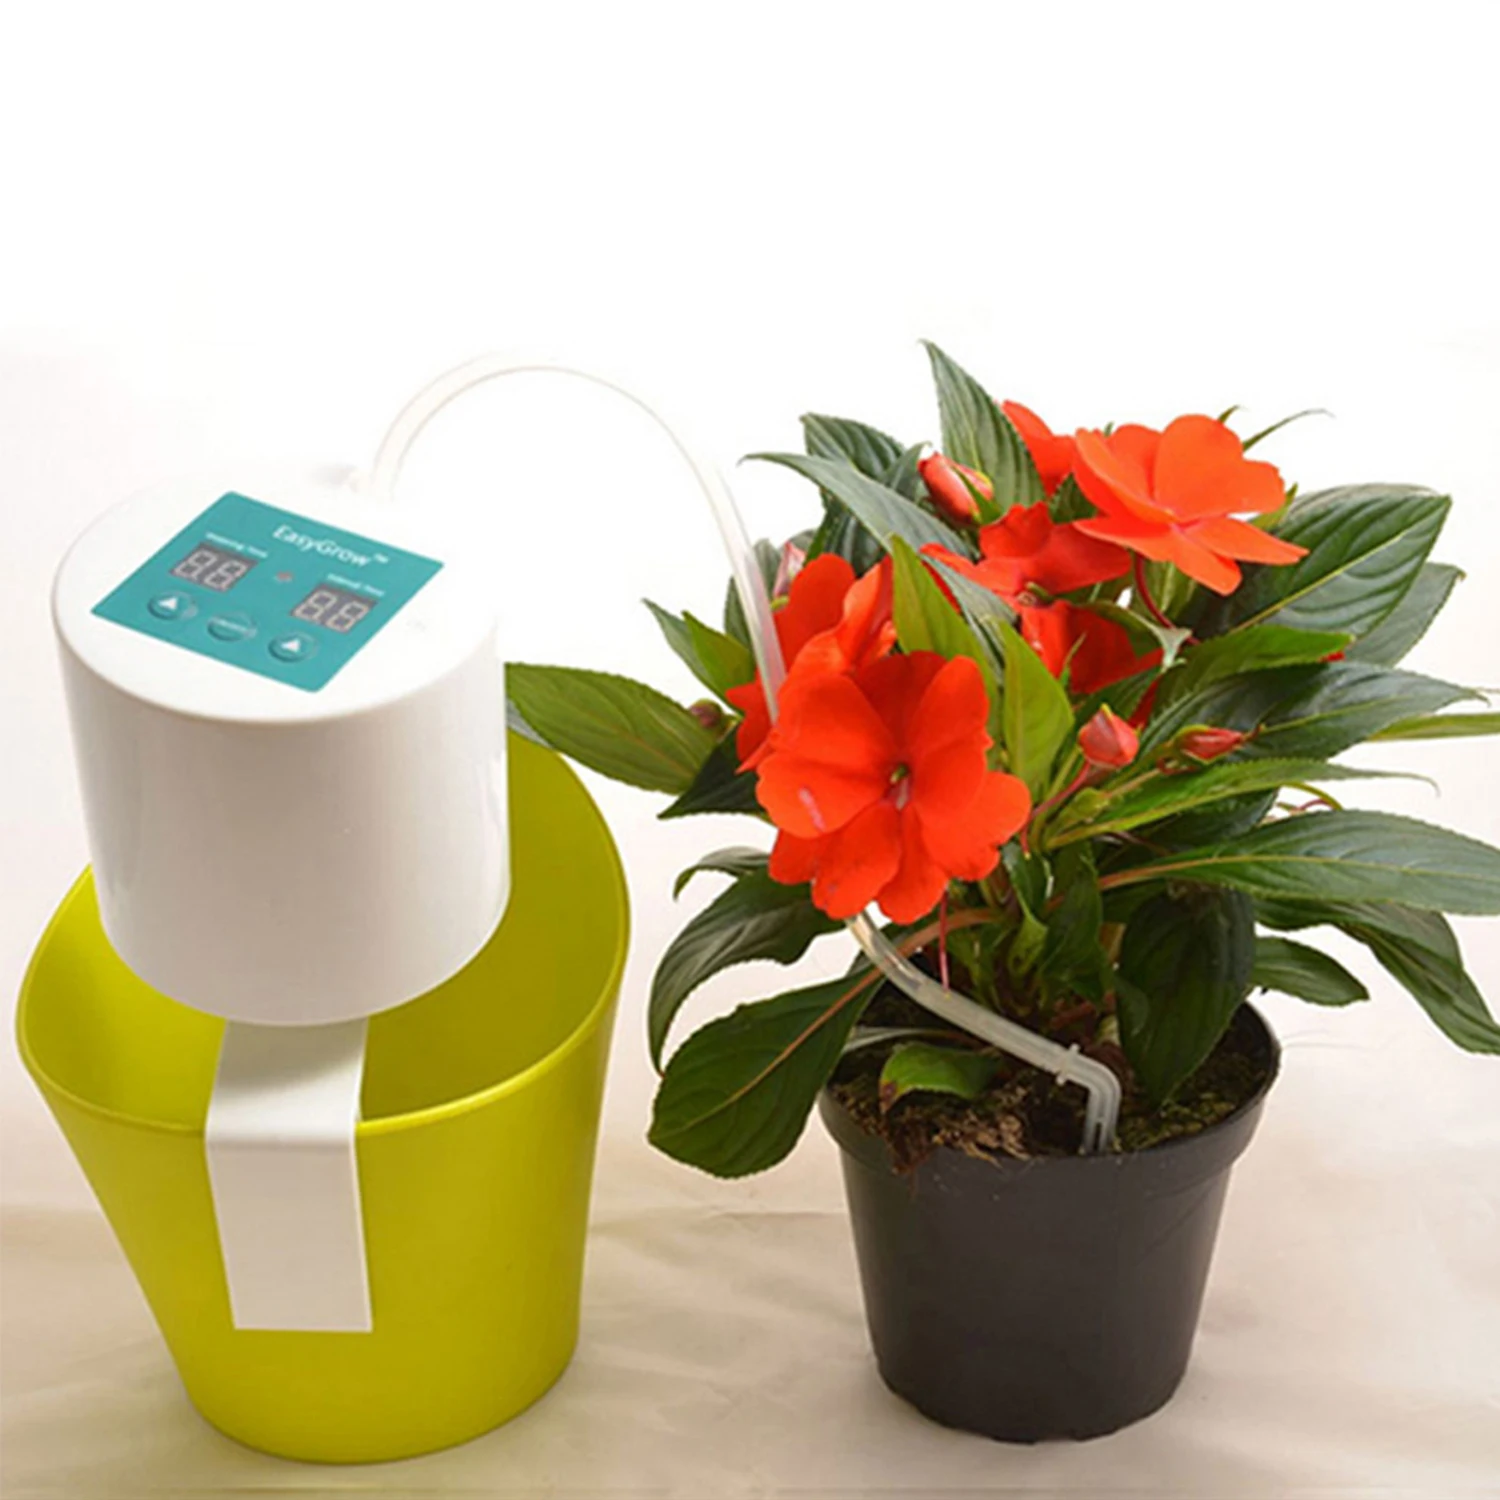 

Таймер для полива растений, устройство для автополива, установка для орошения сада